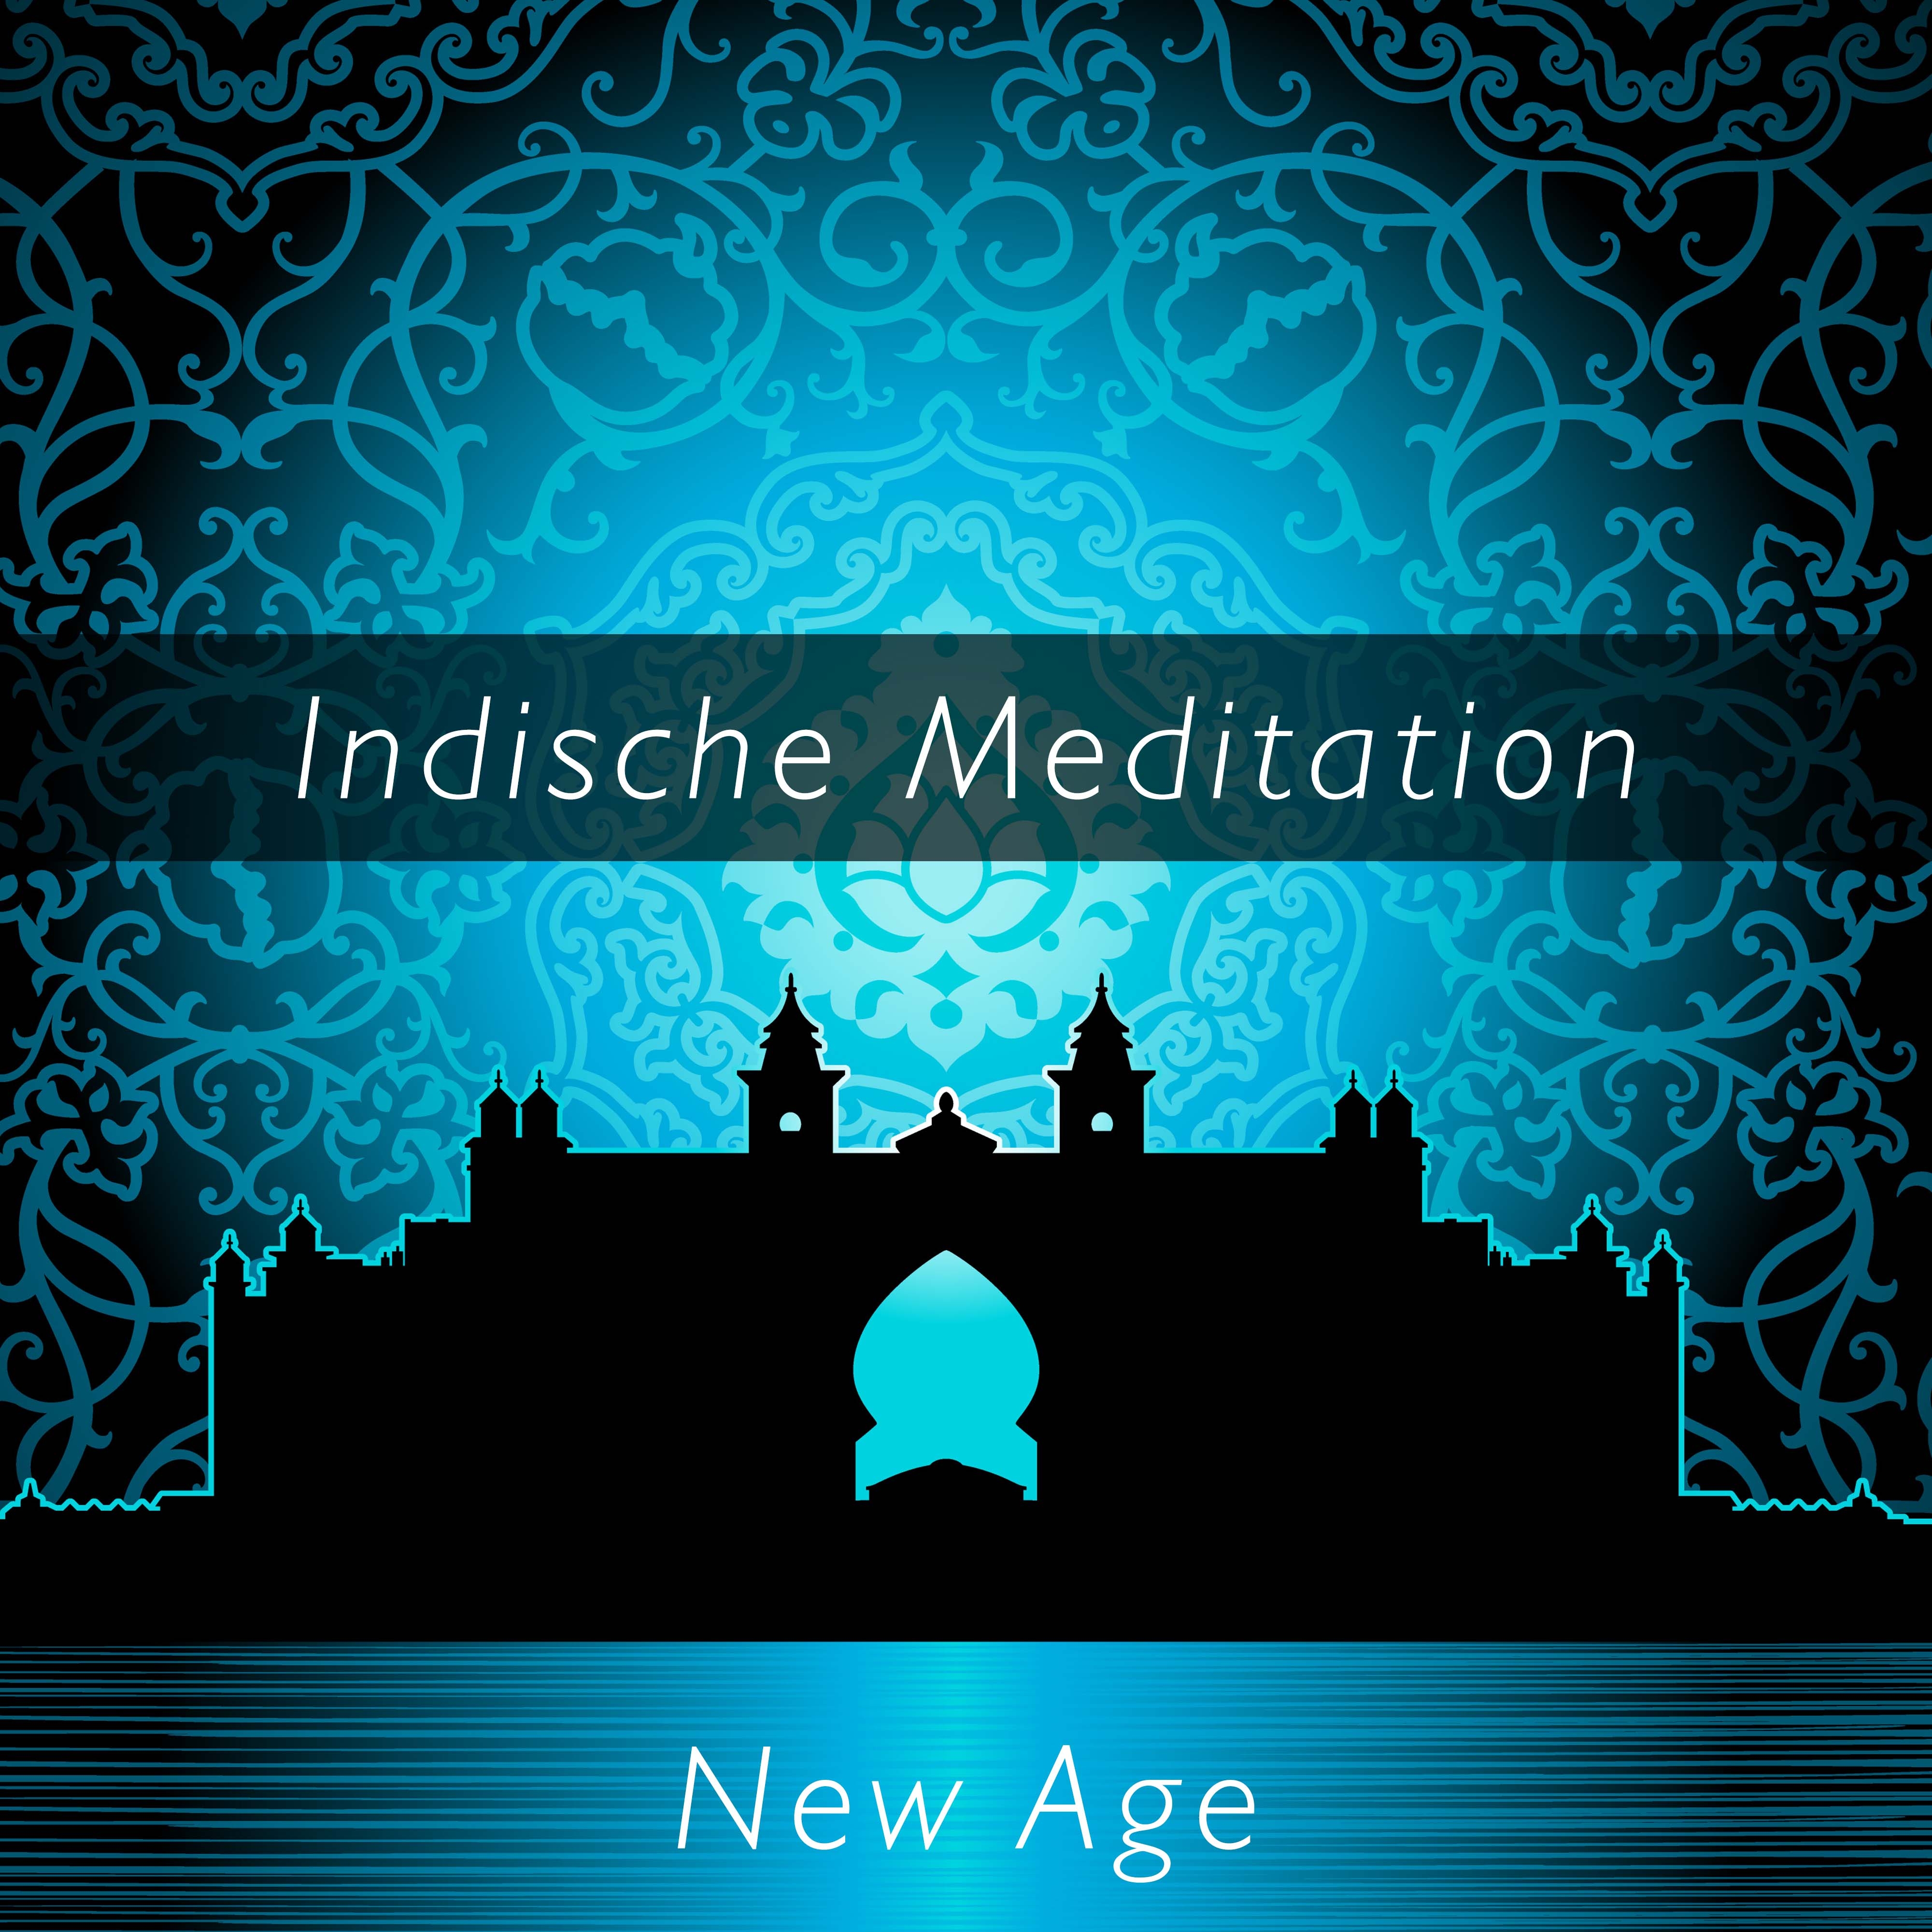 Indische Meditation